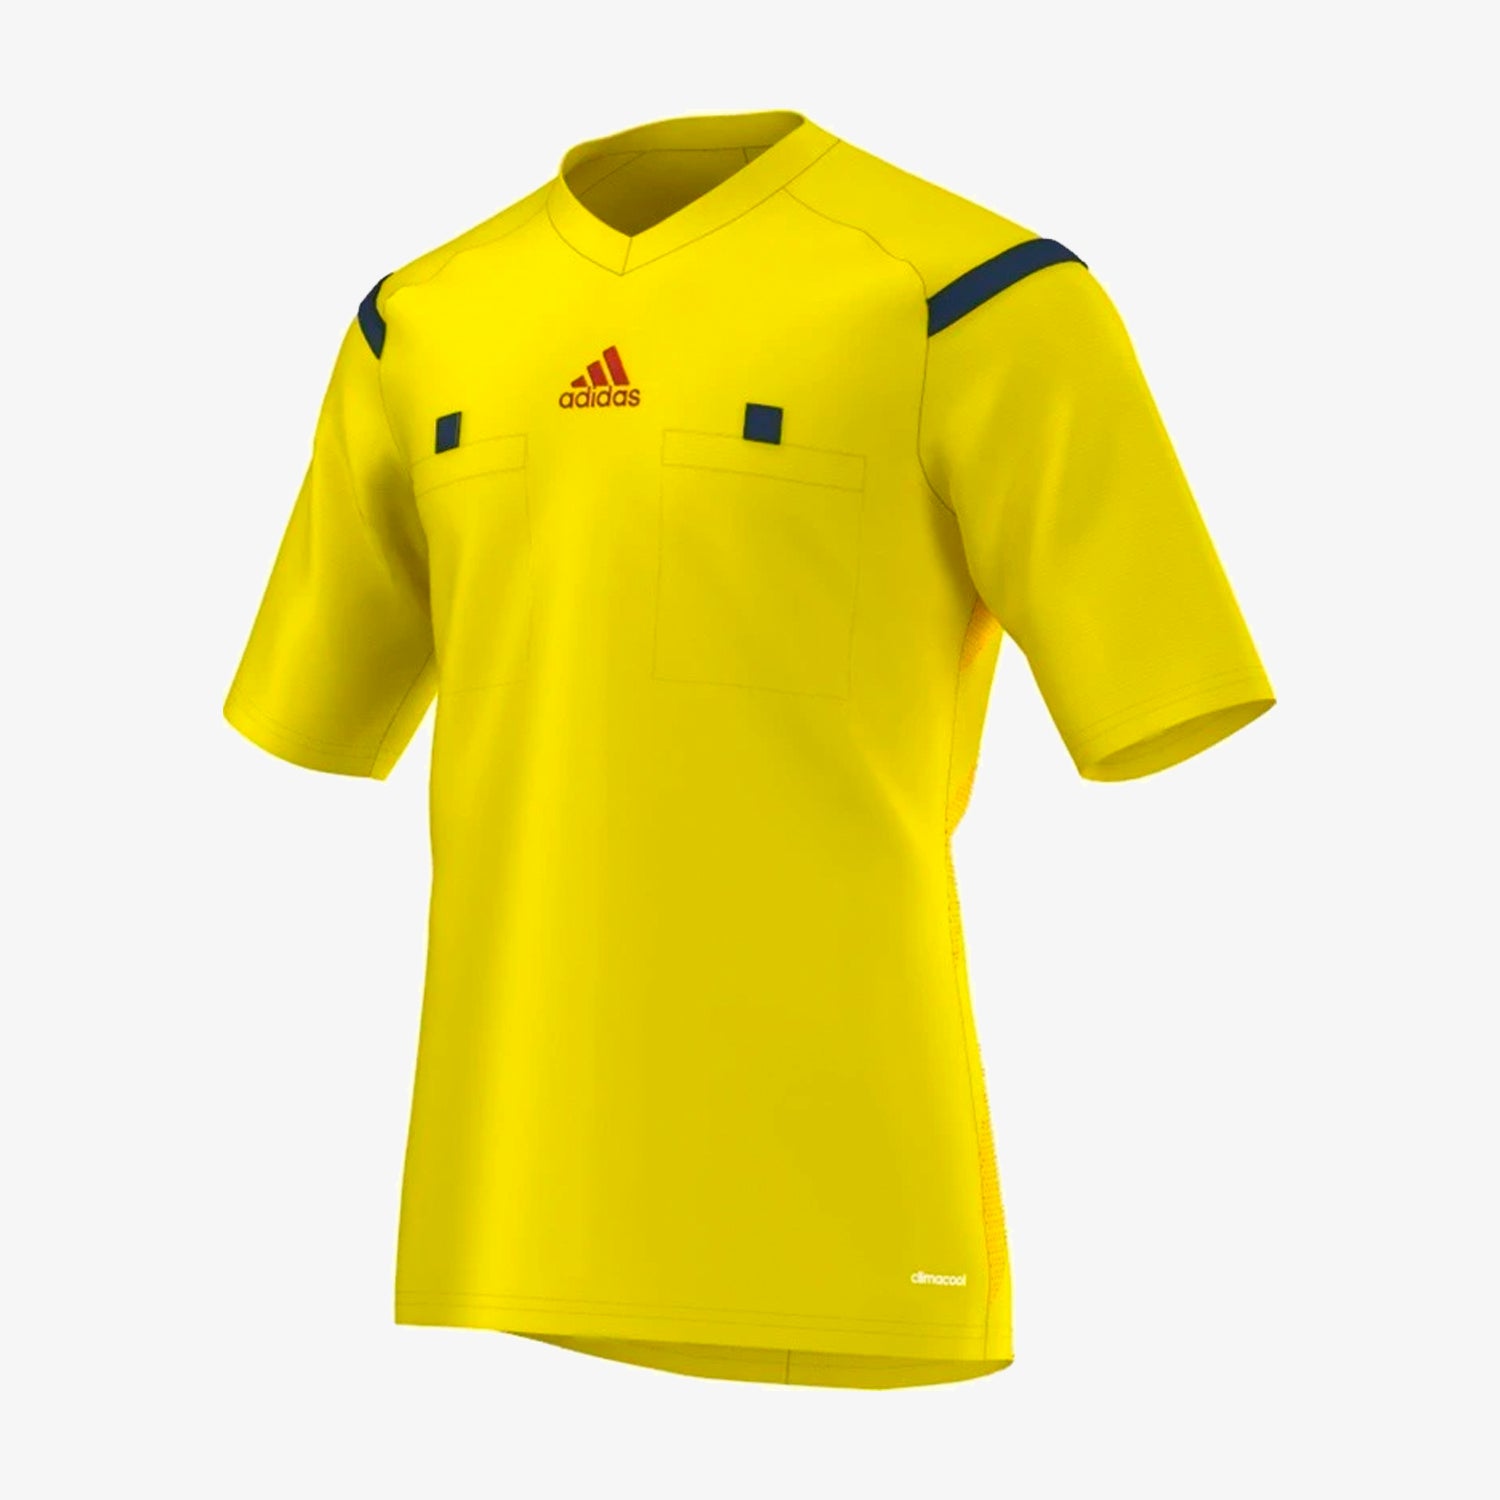 Ceder fácil de lastimarse siguiente Men's Referee 14 Short-Sleeve Jersey - Vivid Yellow/Navy